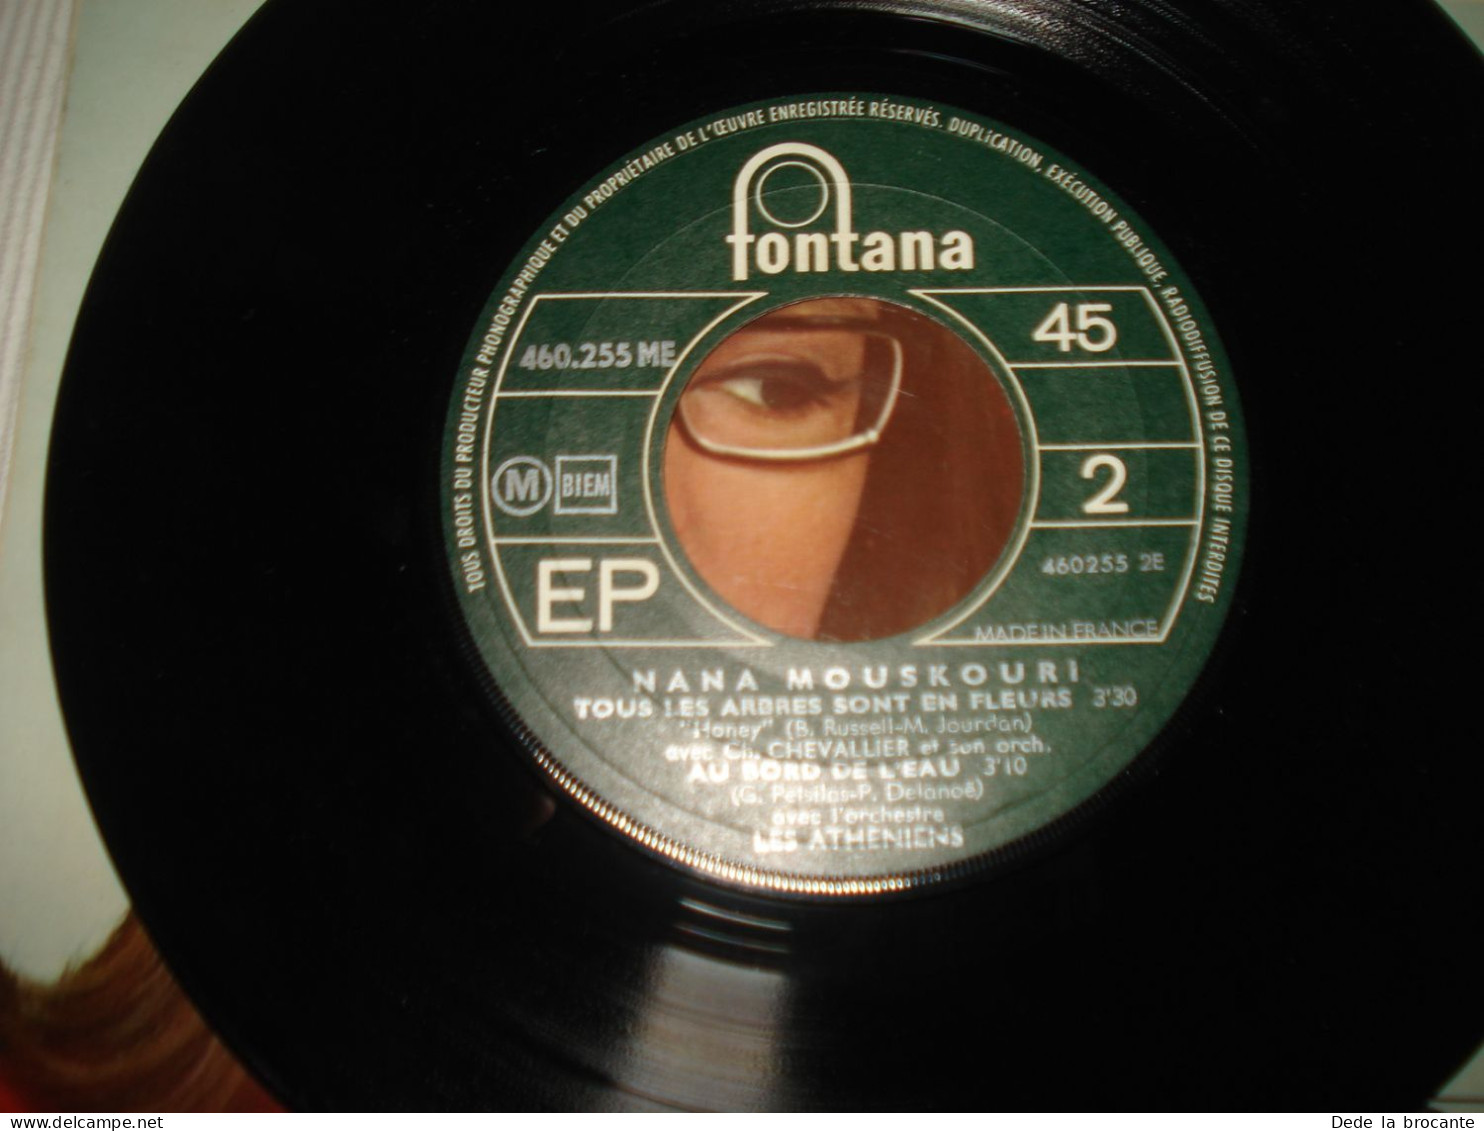 B13 / Nana Mouskouri – Coucourou Paloma - EP – 460 255 ME - Fr 1968  NM/NM - Formati Speciali